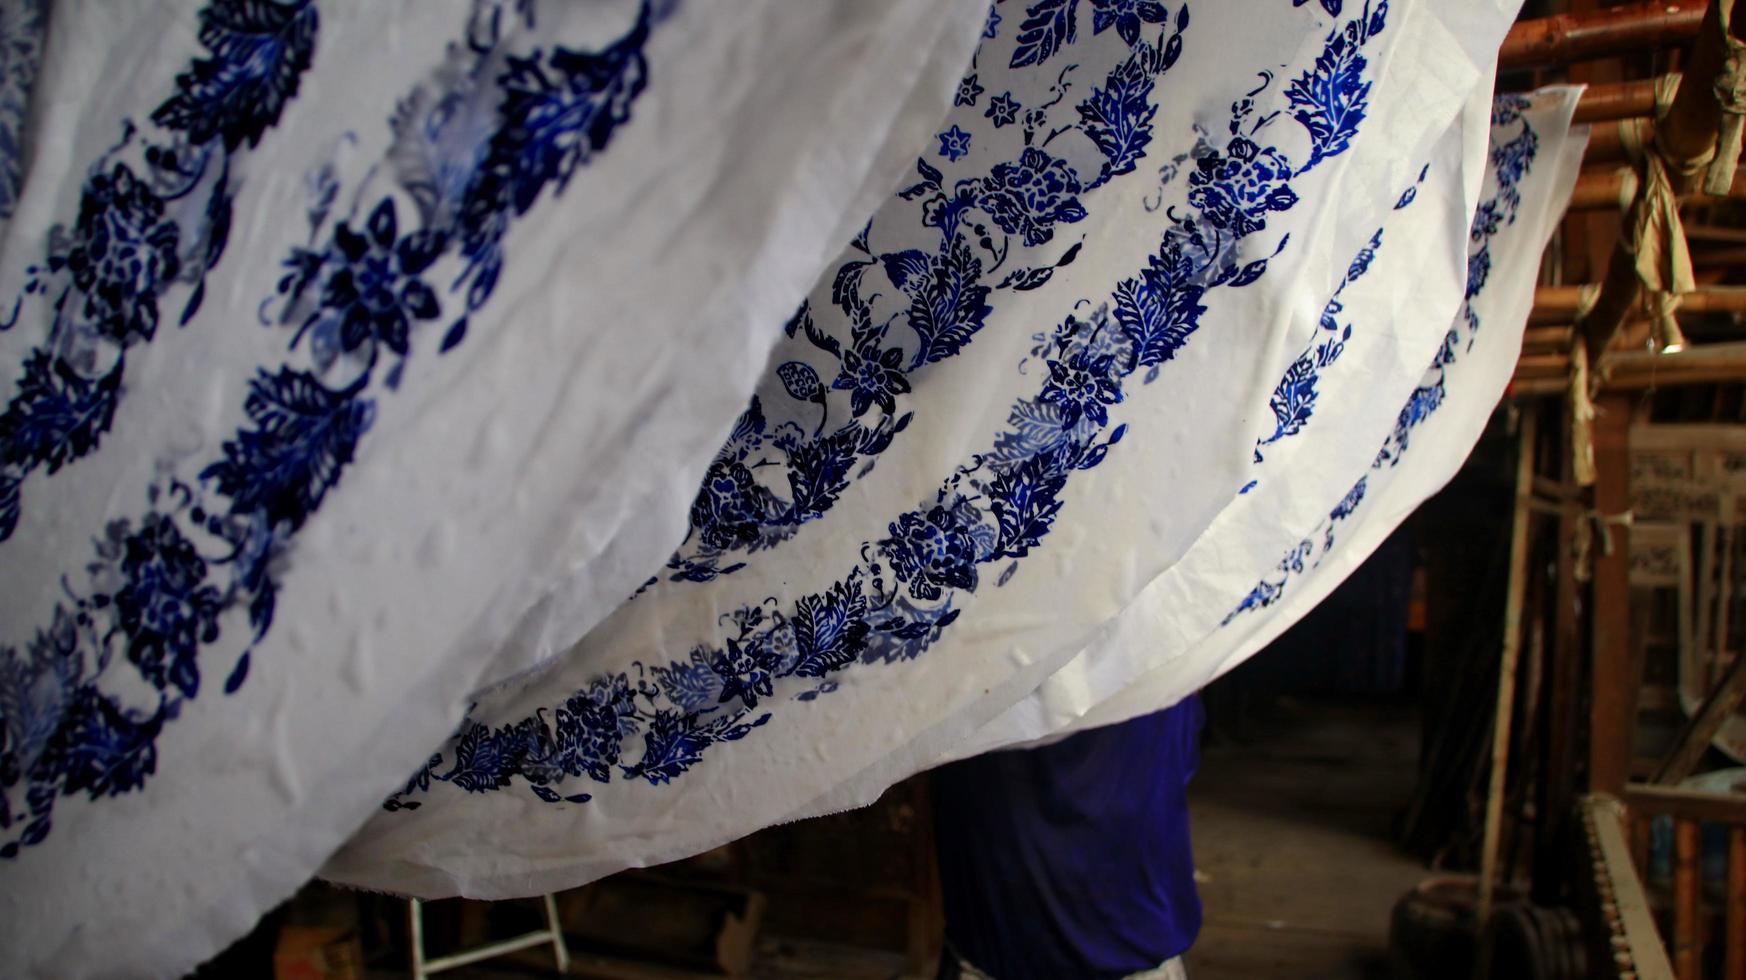 activiteit van het maken van batik, het maken en ontwerpen van witte stof met behulp van kantelen en was door over de stof te slaan, pekalongan, indonesië, 7 maart 2020 foto